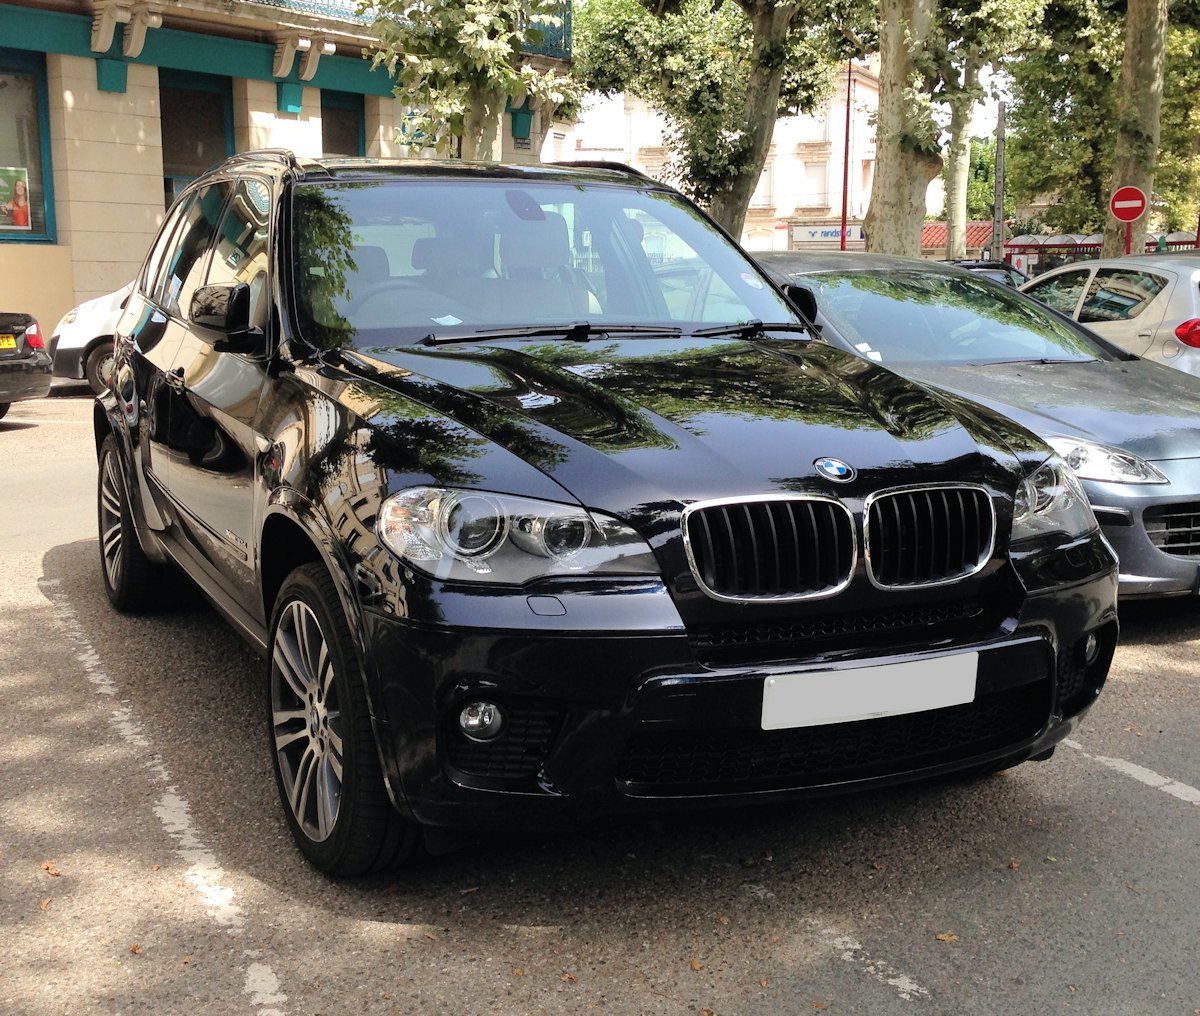 Essai du BMW X5 E70 2007-2013 : Le meilleur des X5 sortis à ce jour ? (+  150 avis)